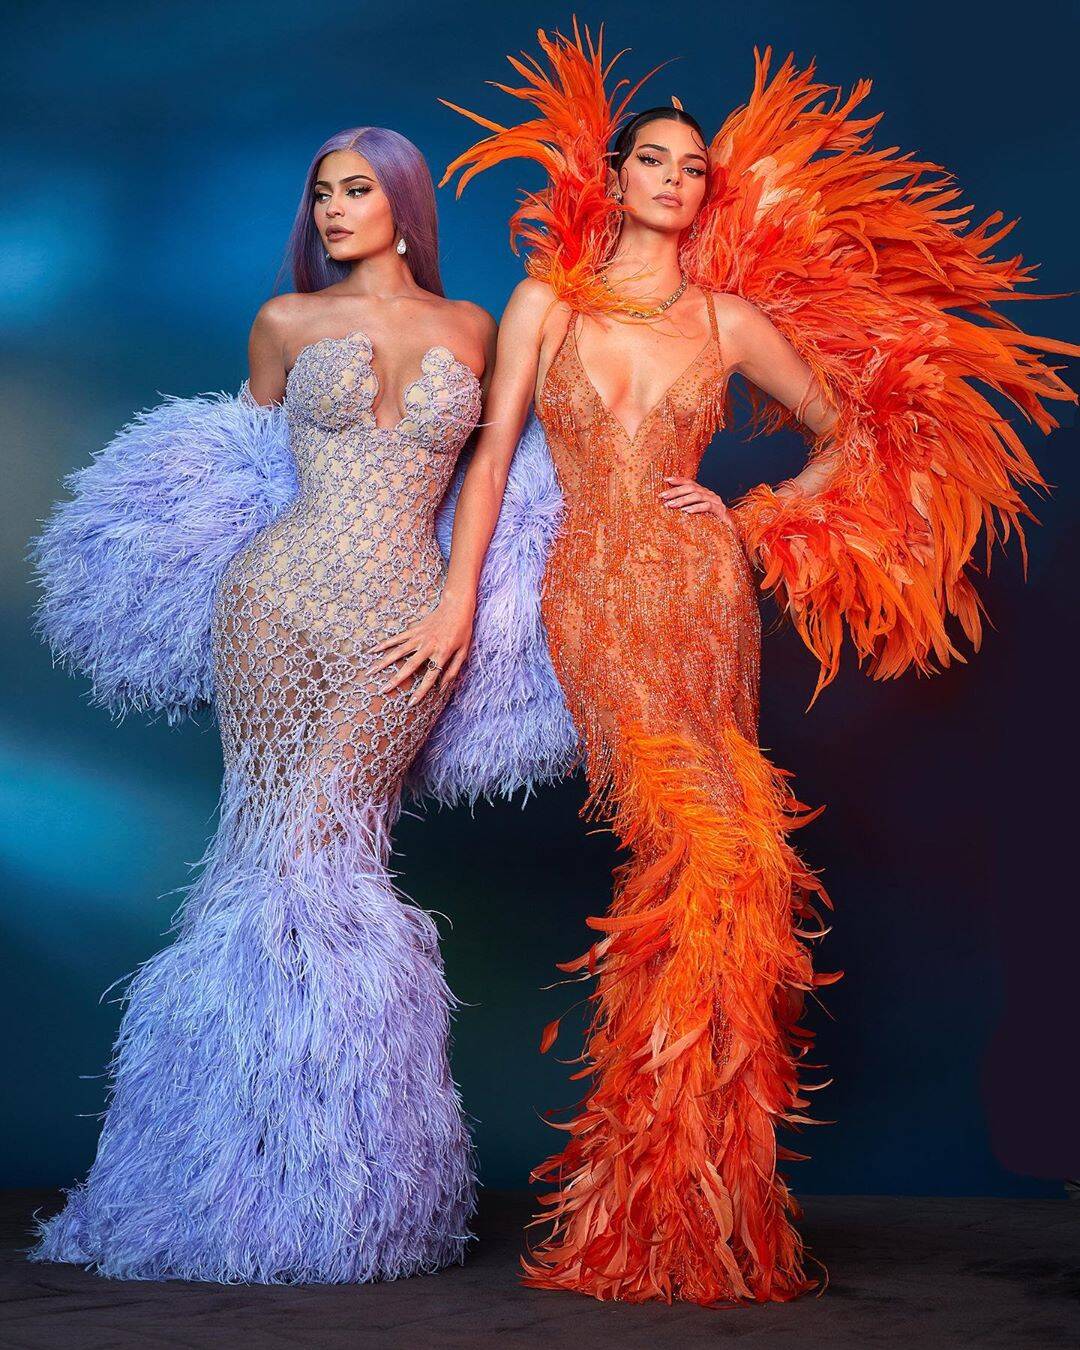 Kyllie e Kendall Jenner no MET Gala 2019 / Foto: Reprodução Instagram